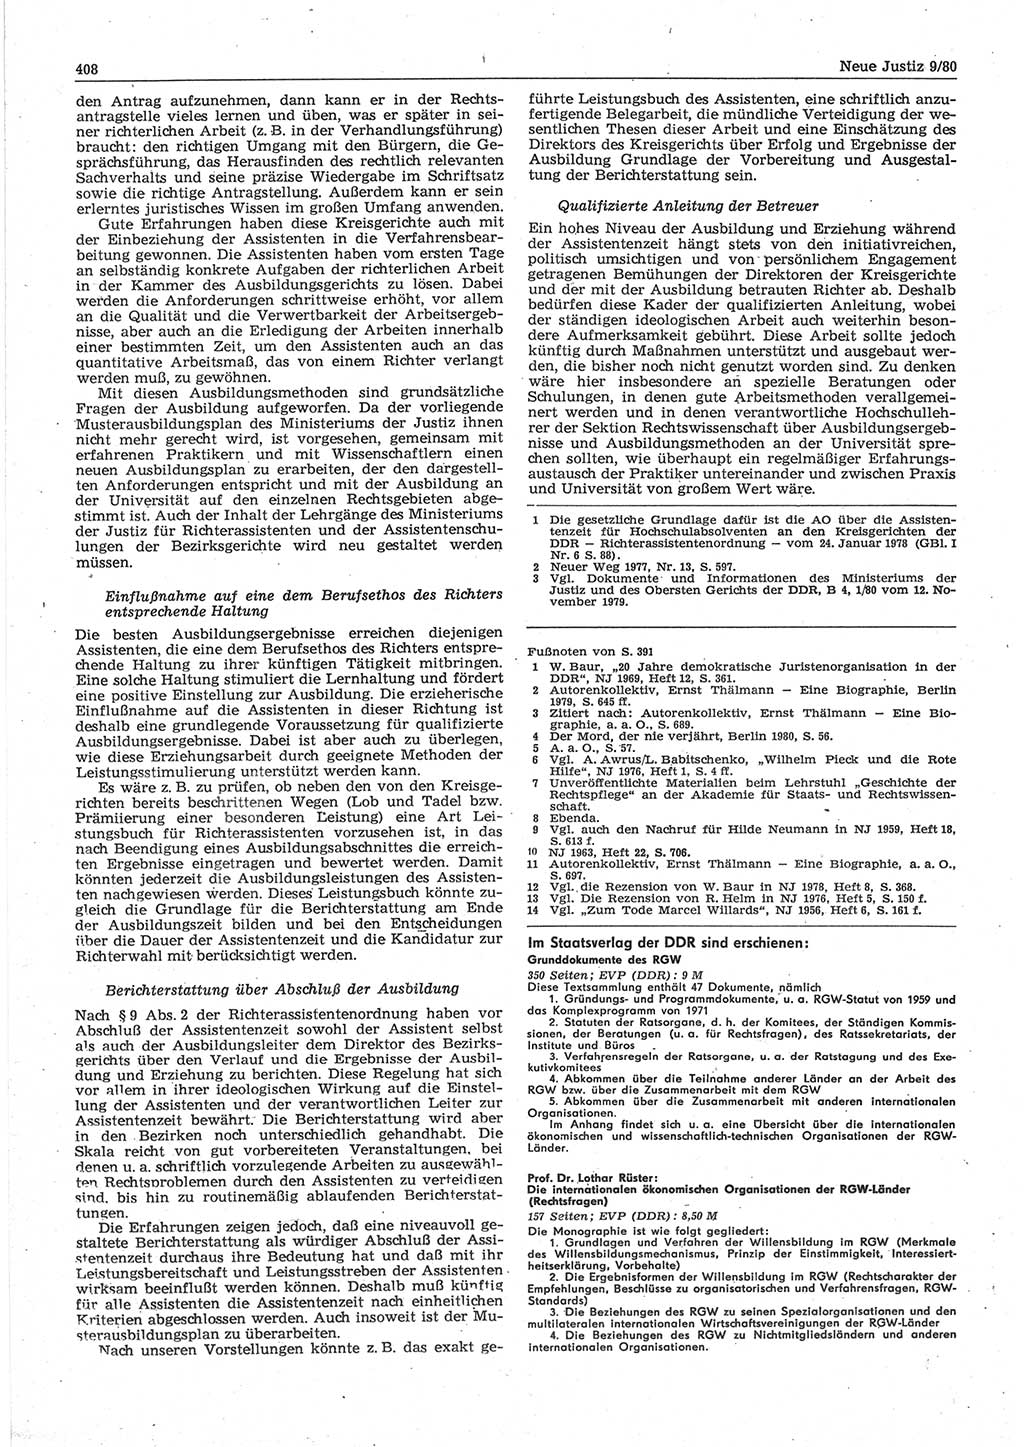 Neue Justiz (NJ), Zeitschrift für sozialistisches Recht und Gesetzlichkeit [Deutsche Demokratische Republik (DDR)], 34. Jahrgang 1980, Seite 408 (NJ DDR 1980, S. 408)